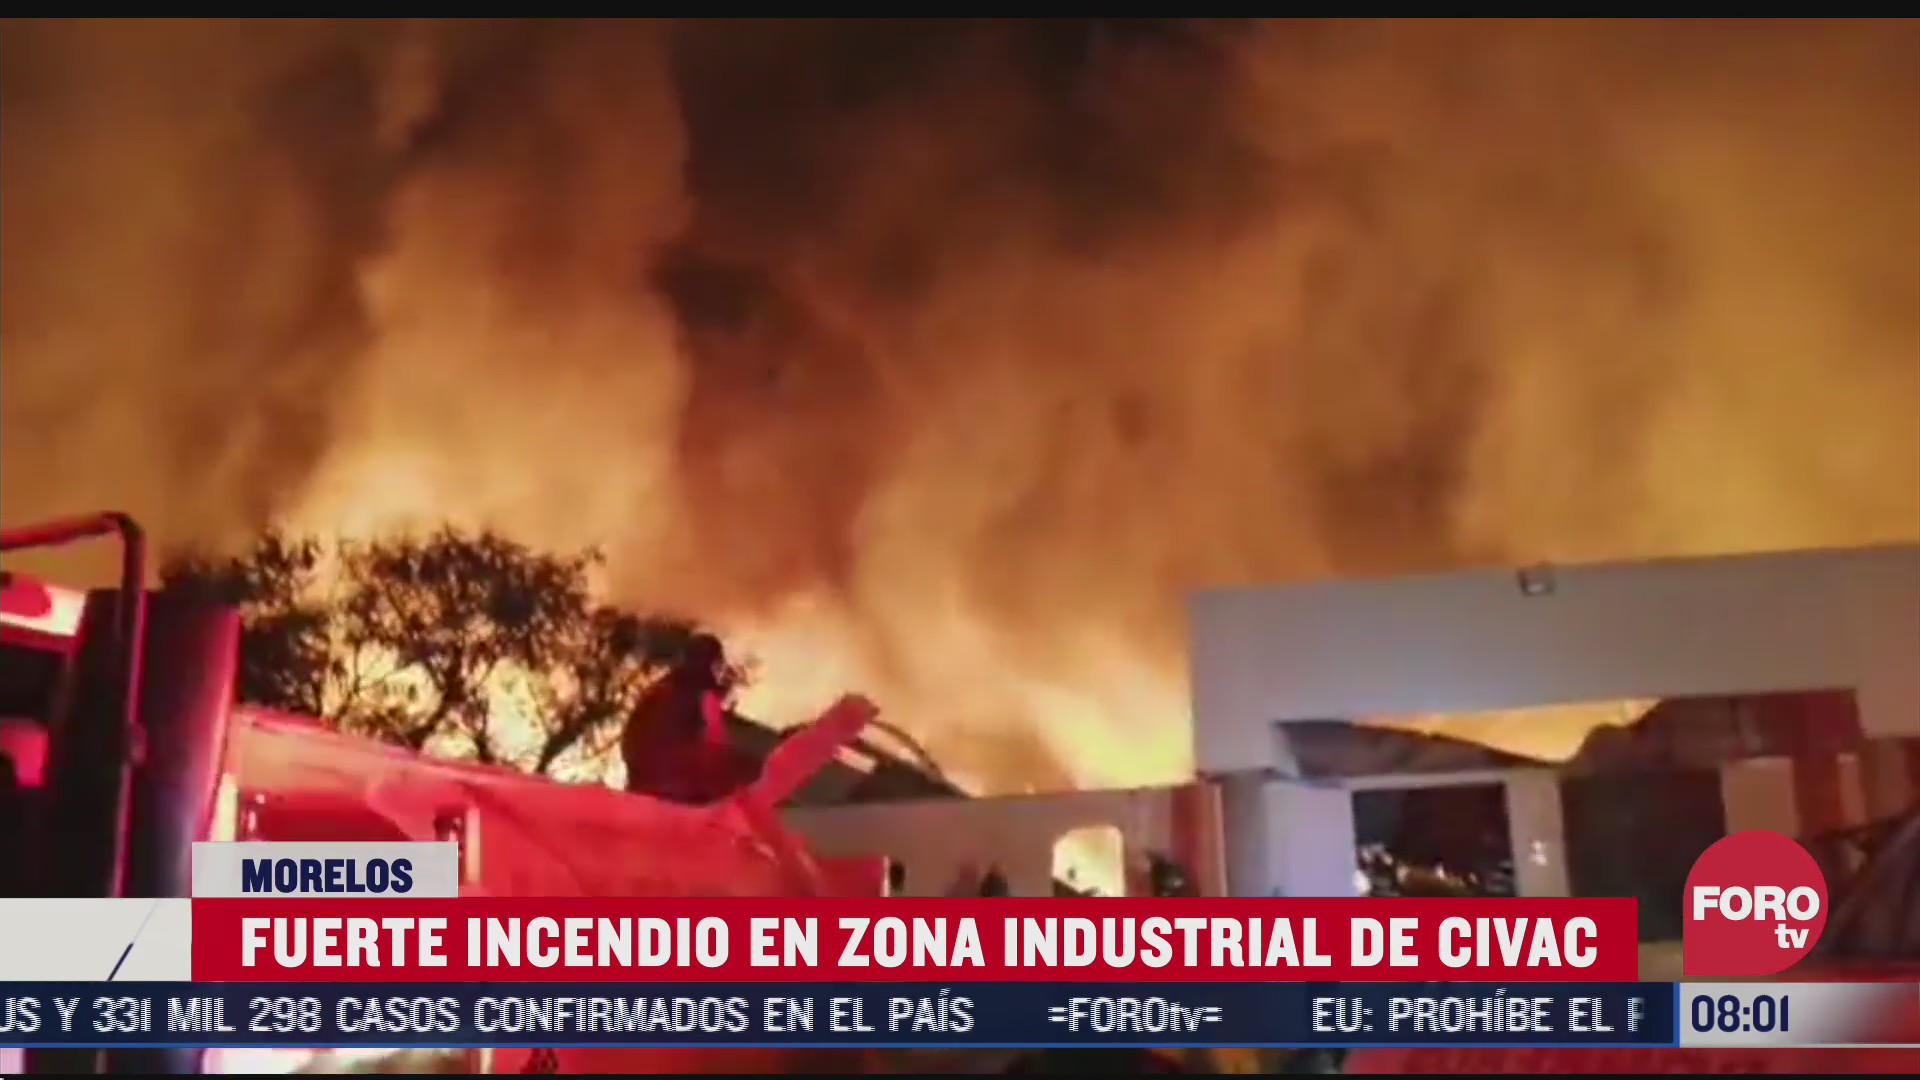 FOTO: 19 de julio 2020, fuerte incendio consume fabrica de cosmeticos en jiutepec morelos